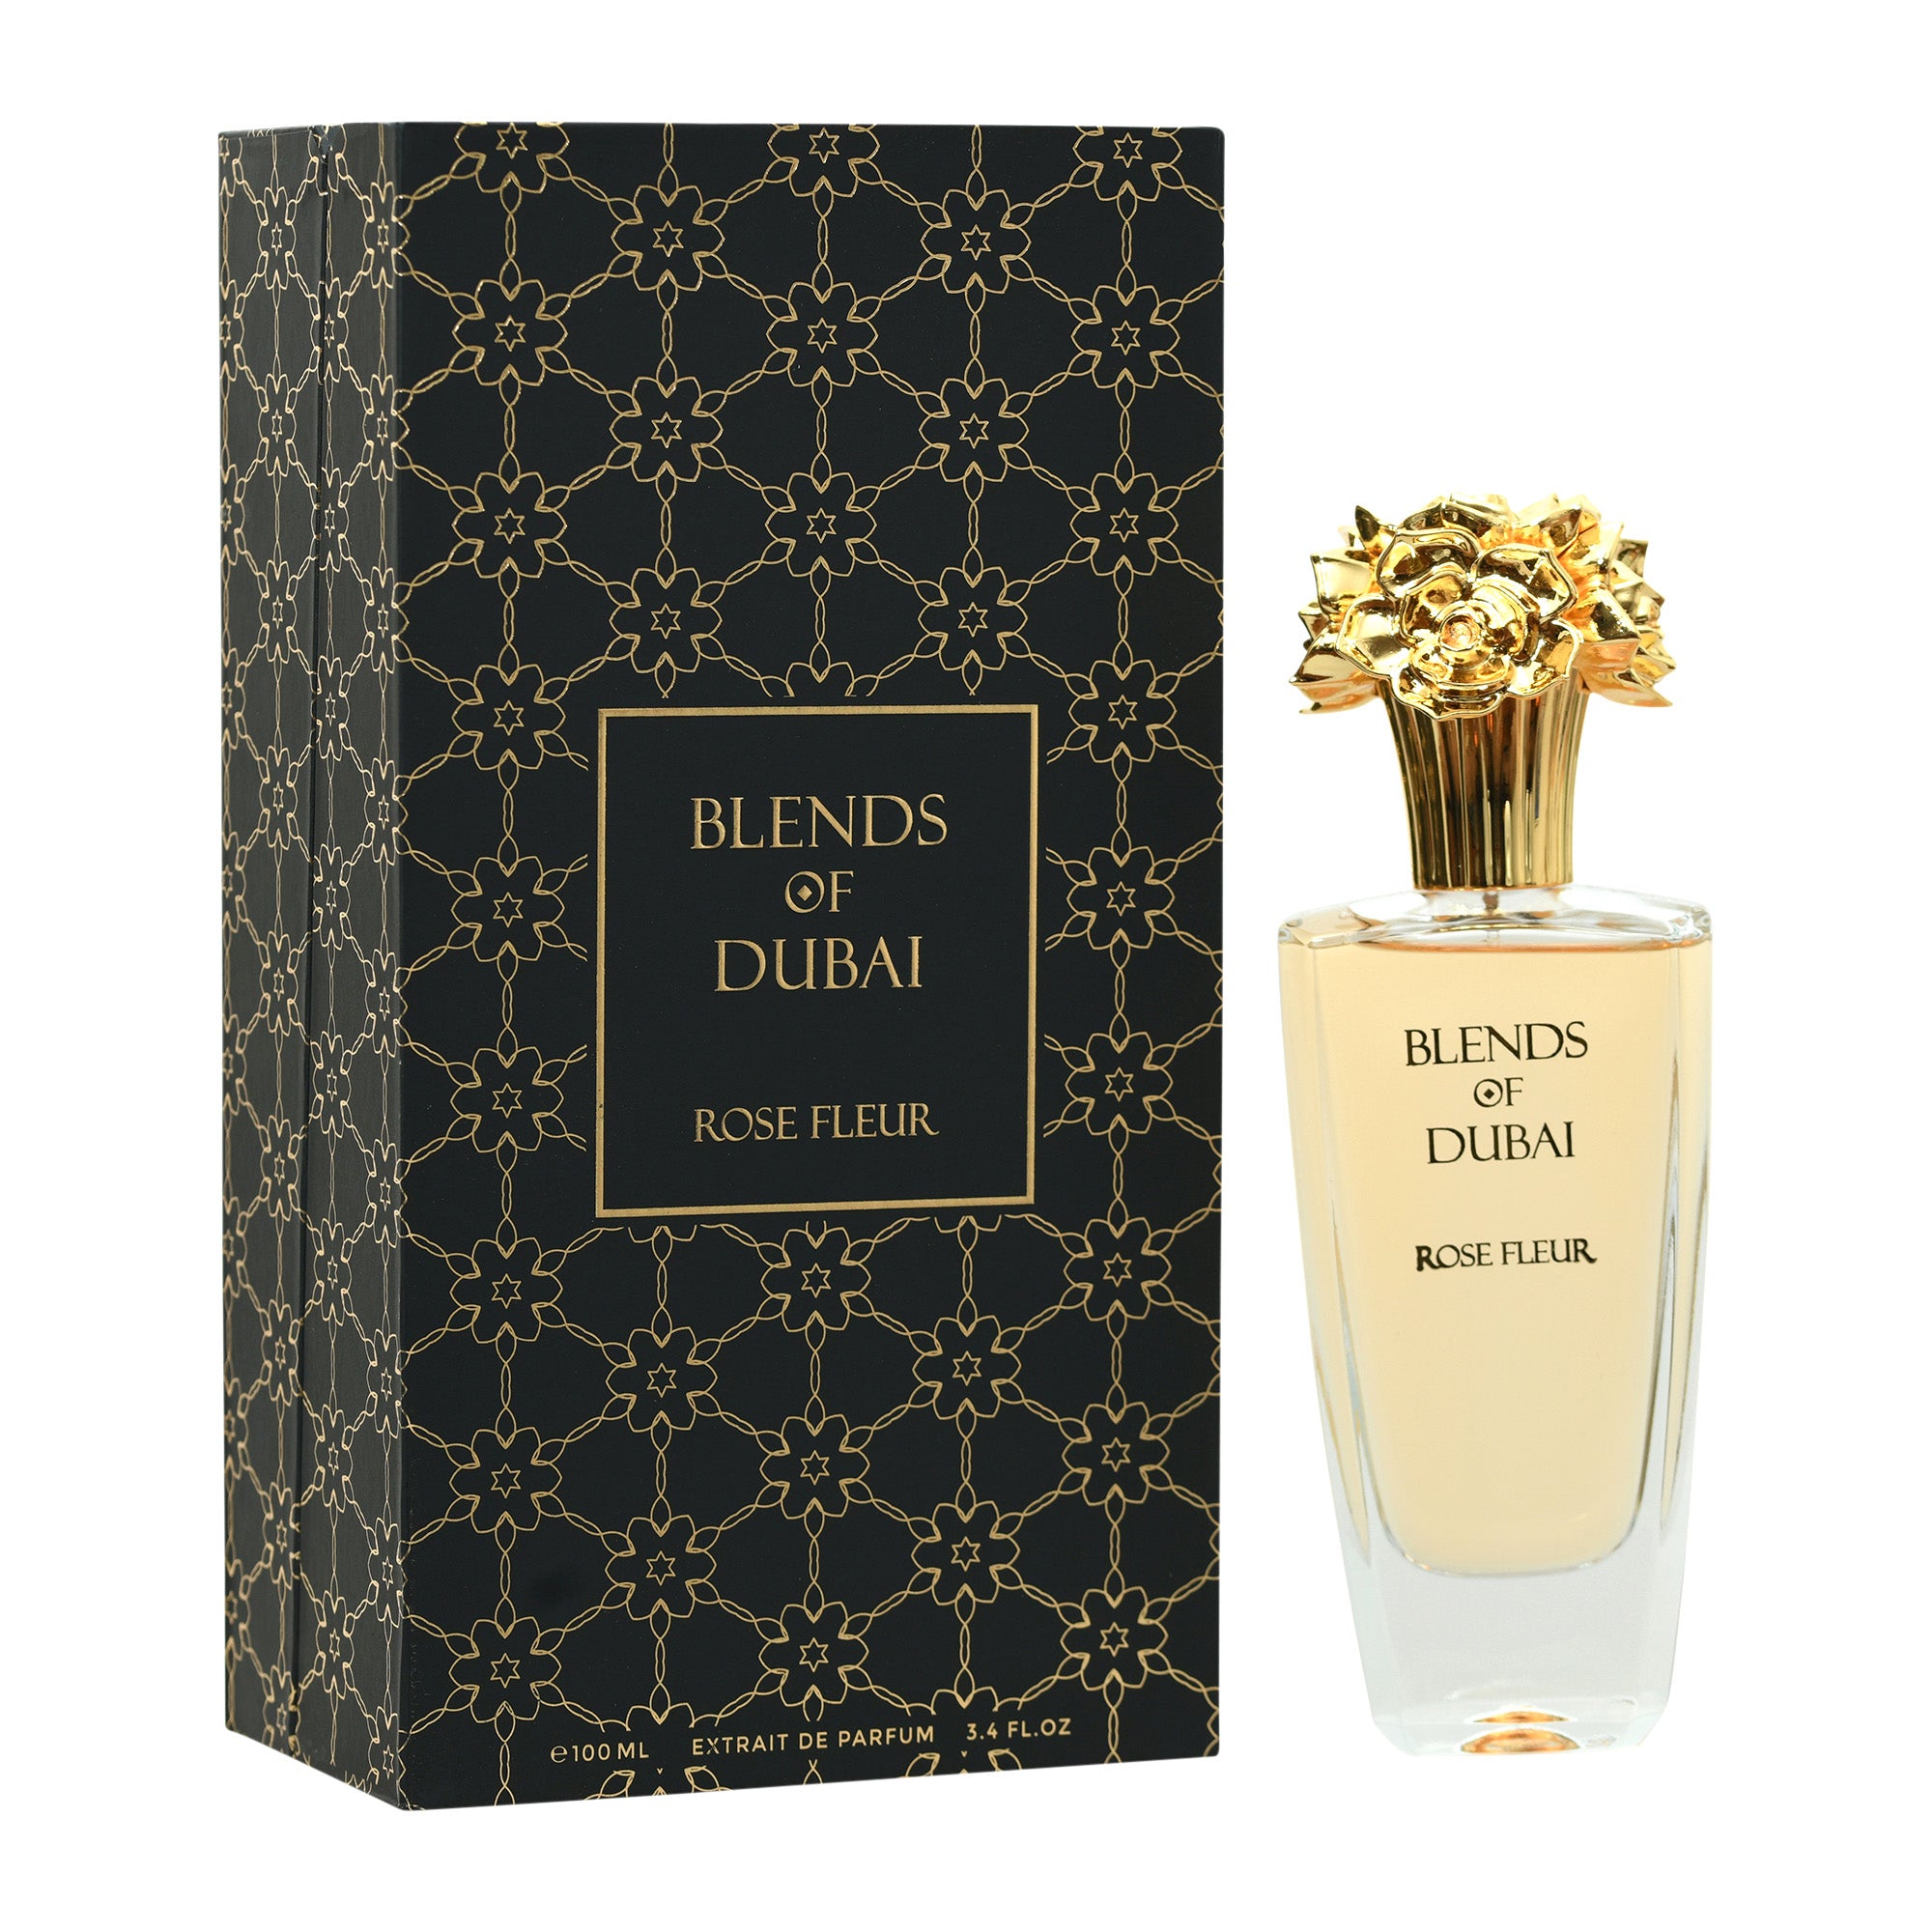 Blends of Dubai Rose Fleur Eau De Parfum 100ml